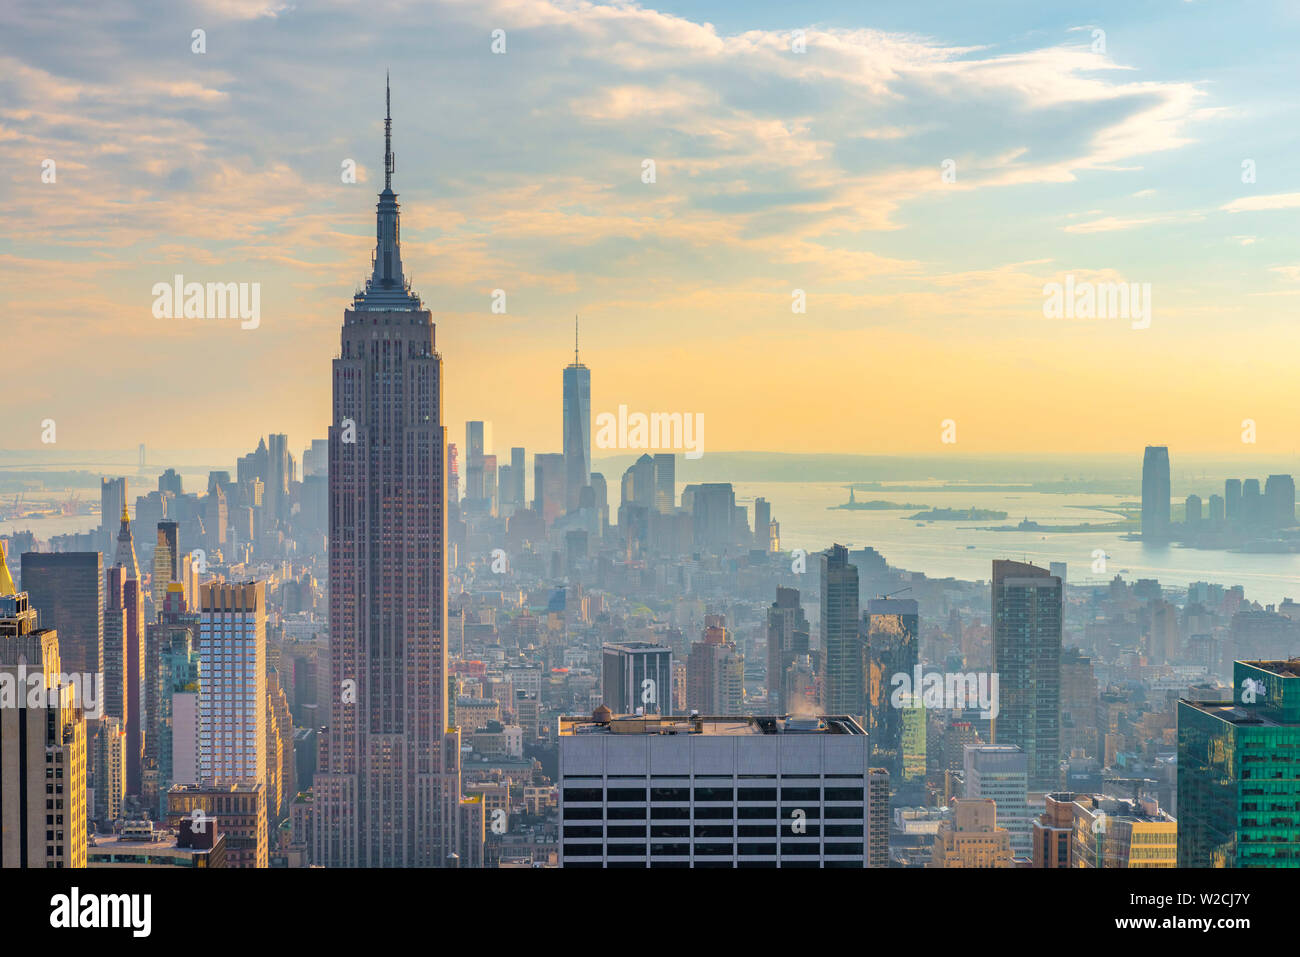 USA, New York, Midtown et Lower Manhattan, Empire State Building et la Tour de la Liberté Banque D'Images